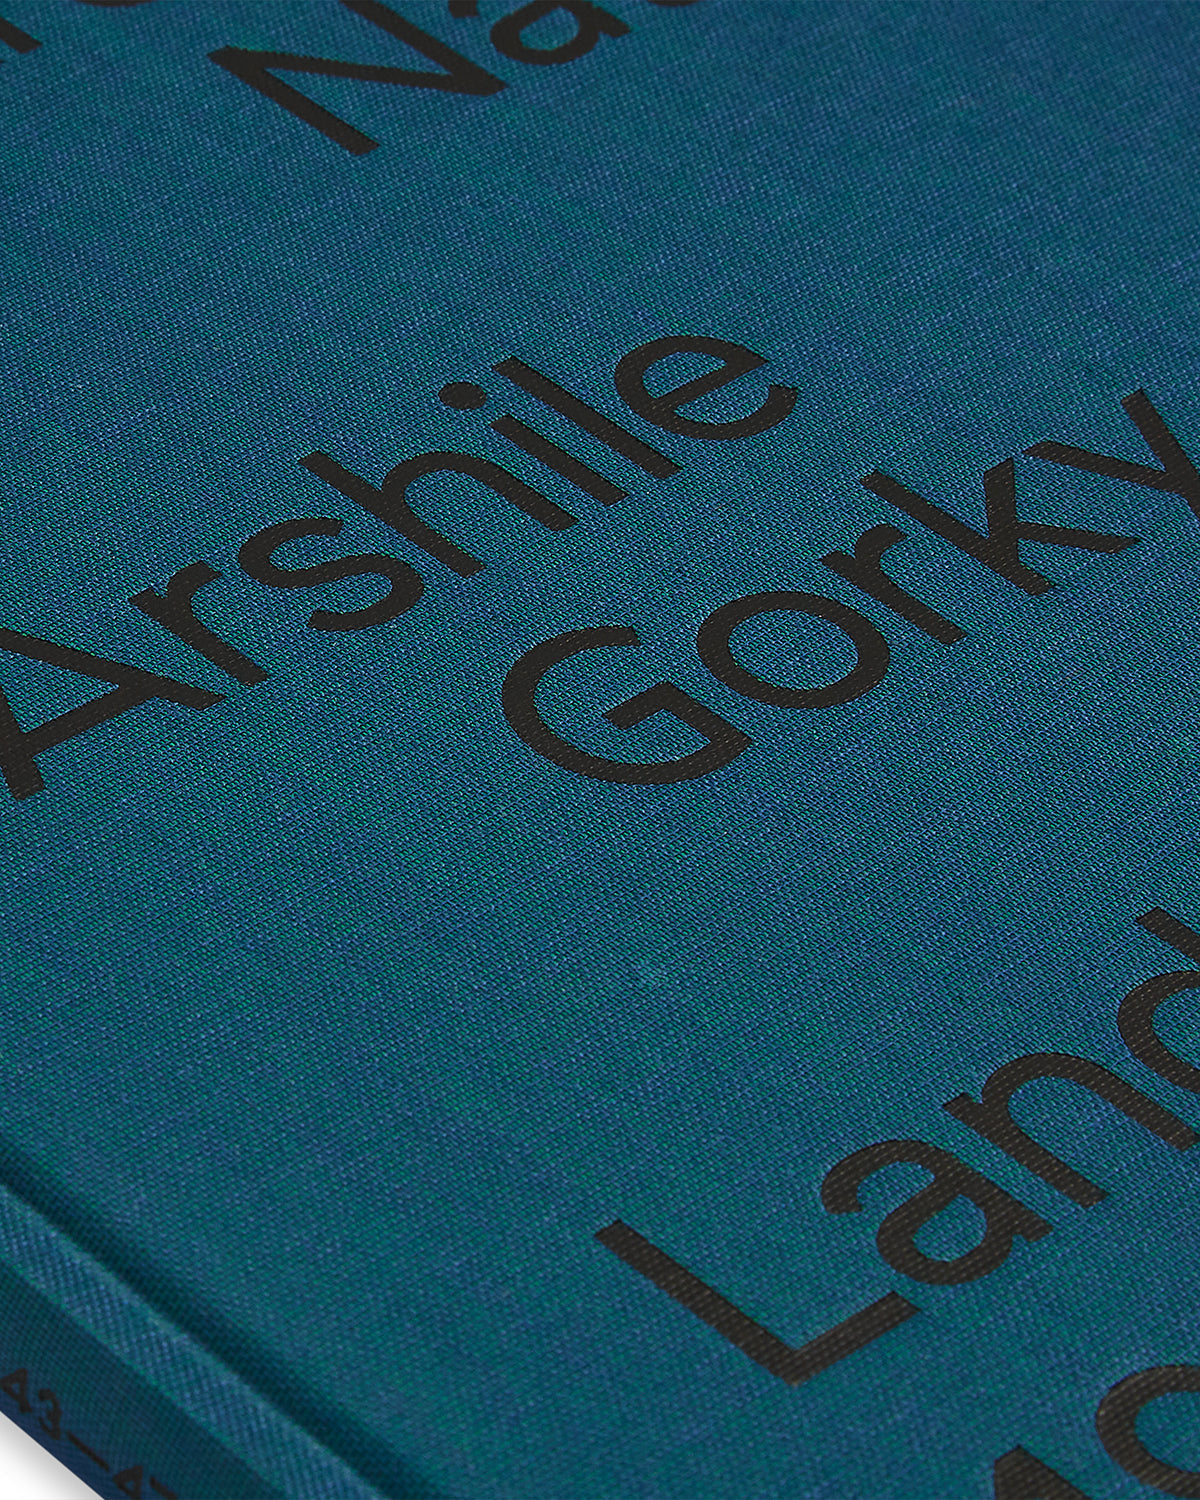 Ardent Nature. Arshile Gorky. Landscapes 1943-47 Default Title